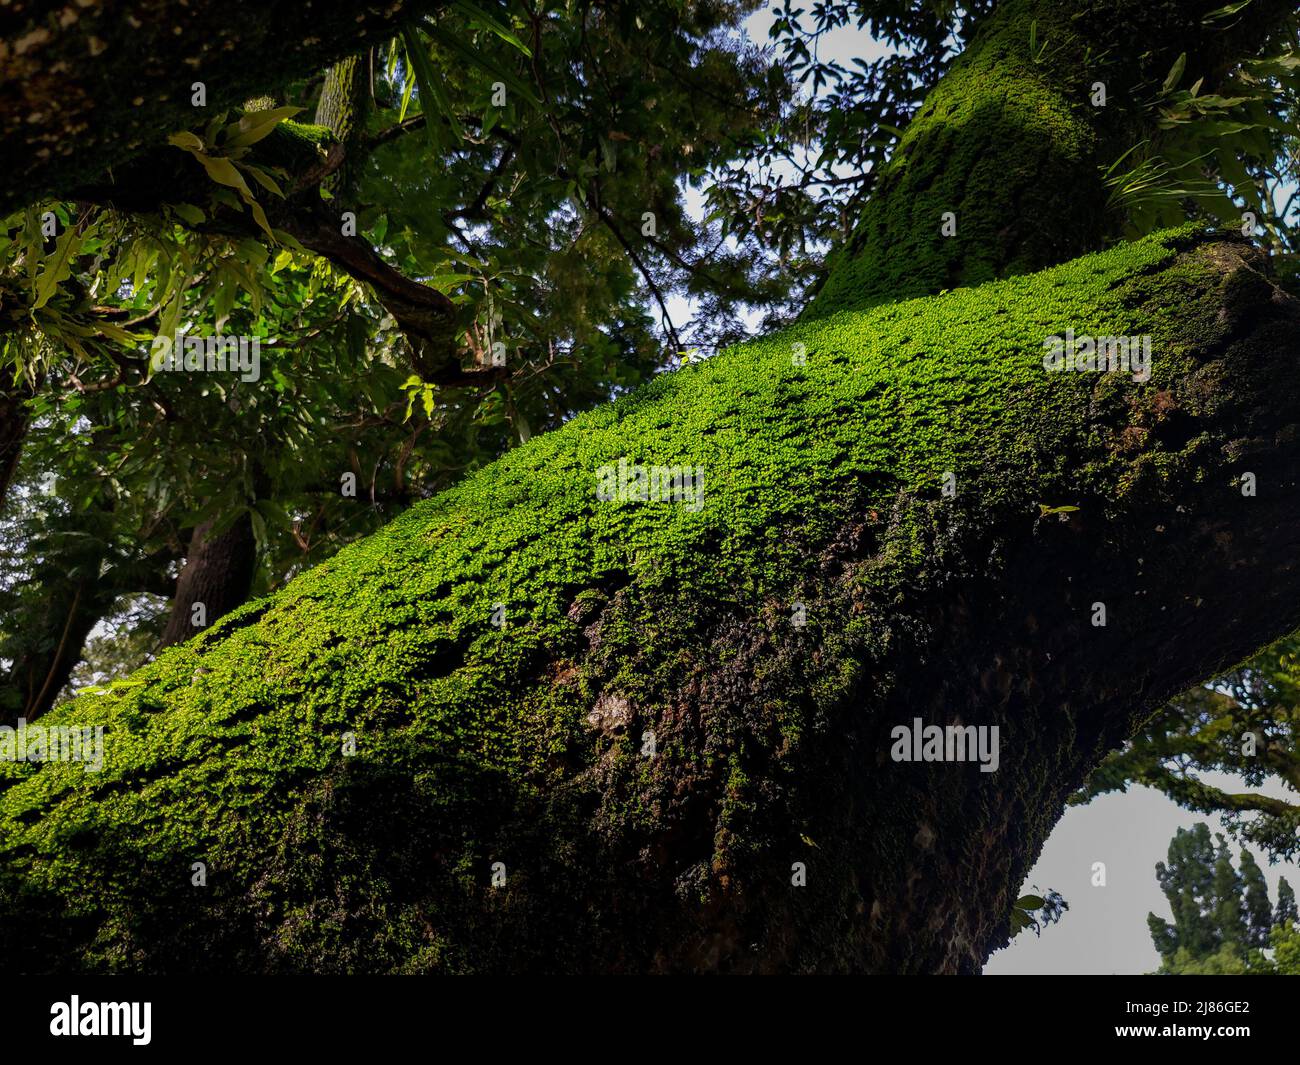 Un grand tronc d'arbre recouvert de mousse verte à uttarakhand Inde. Banque D'Images